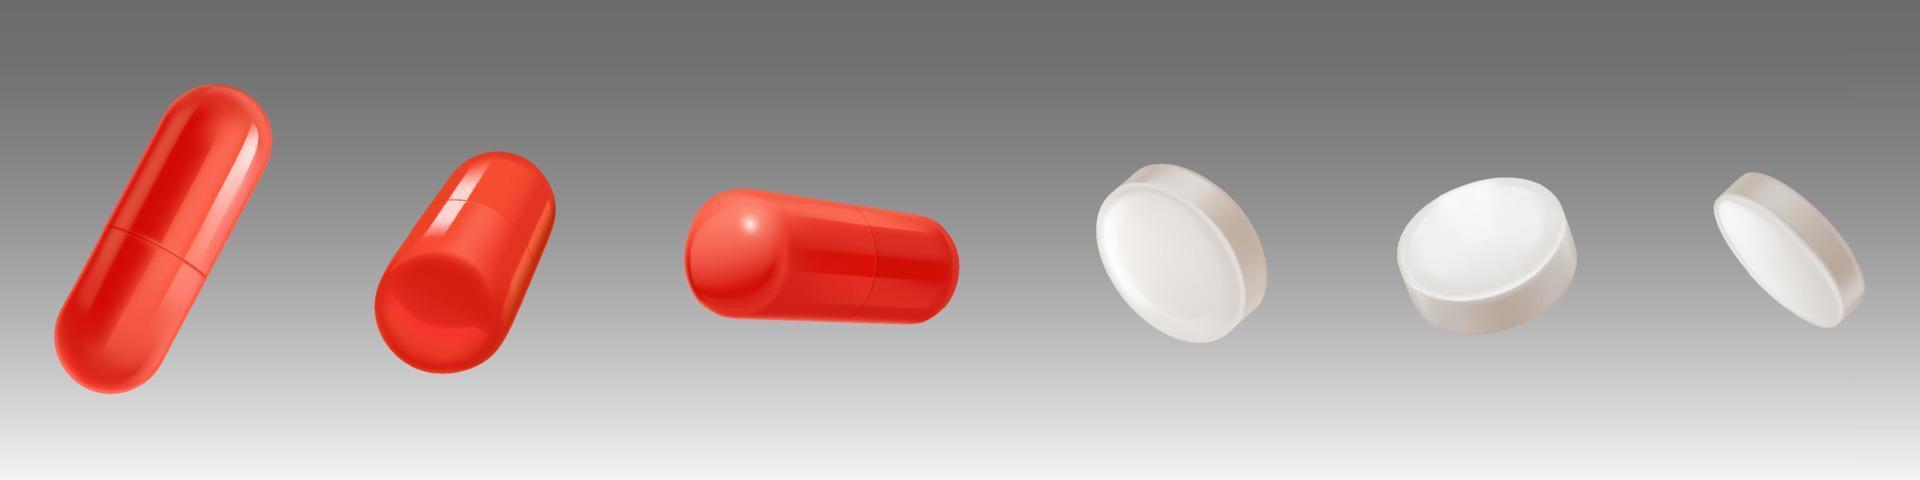 Medikamente, weiße Tabletten und rote Kapseln vektor